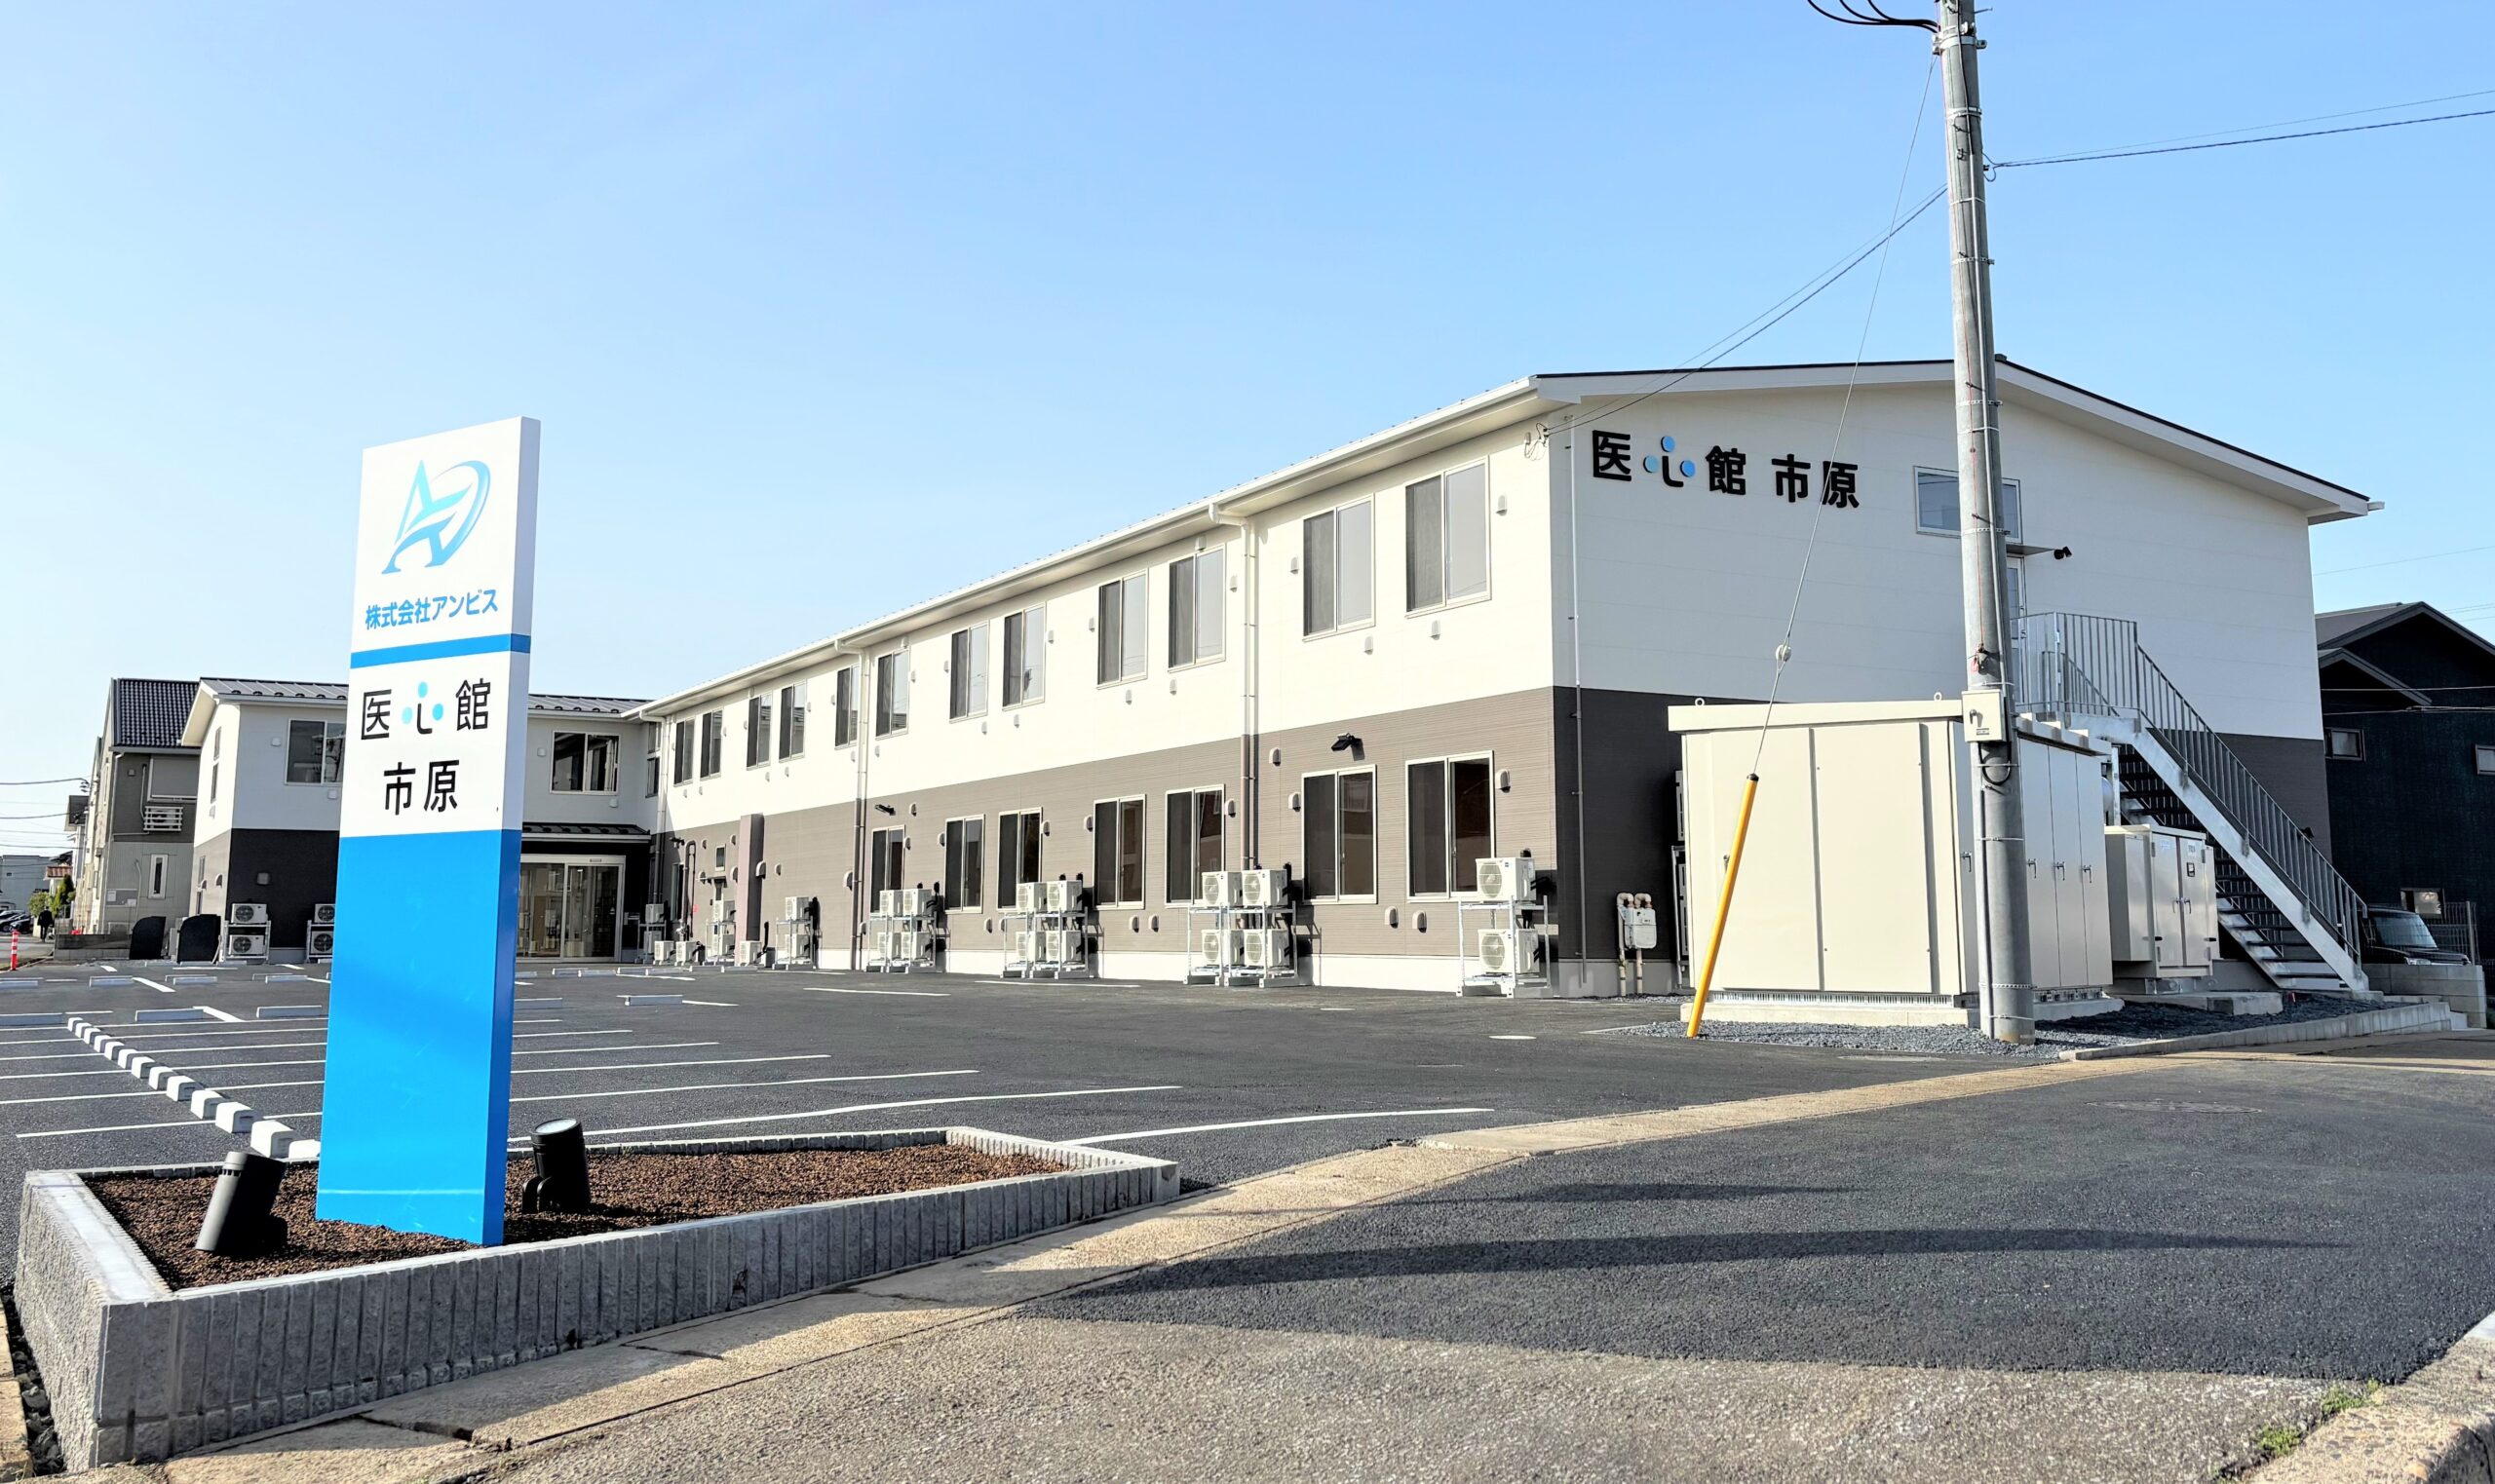 千葉県では９施設目となる 有料老人ホーム「医心館 市原」をオープンしました